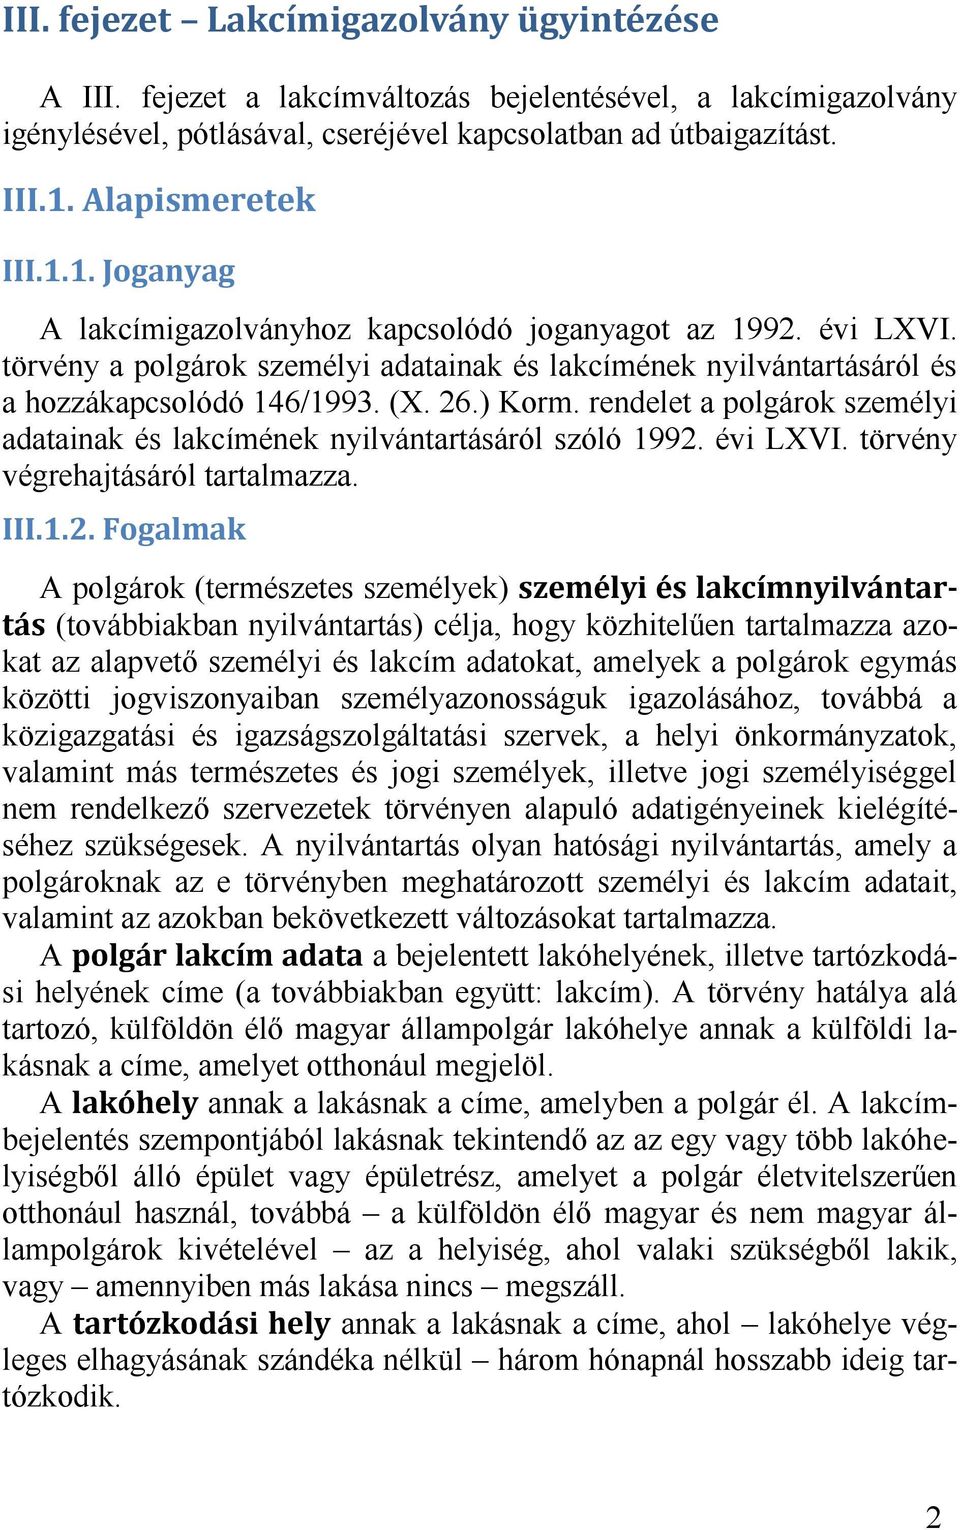 évi LXVI. törvény végrehajtásáról tartalmazza.